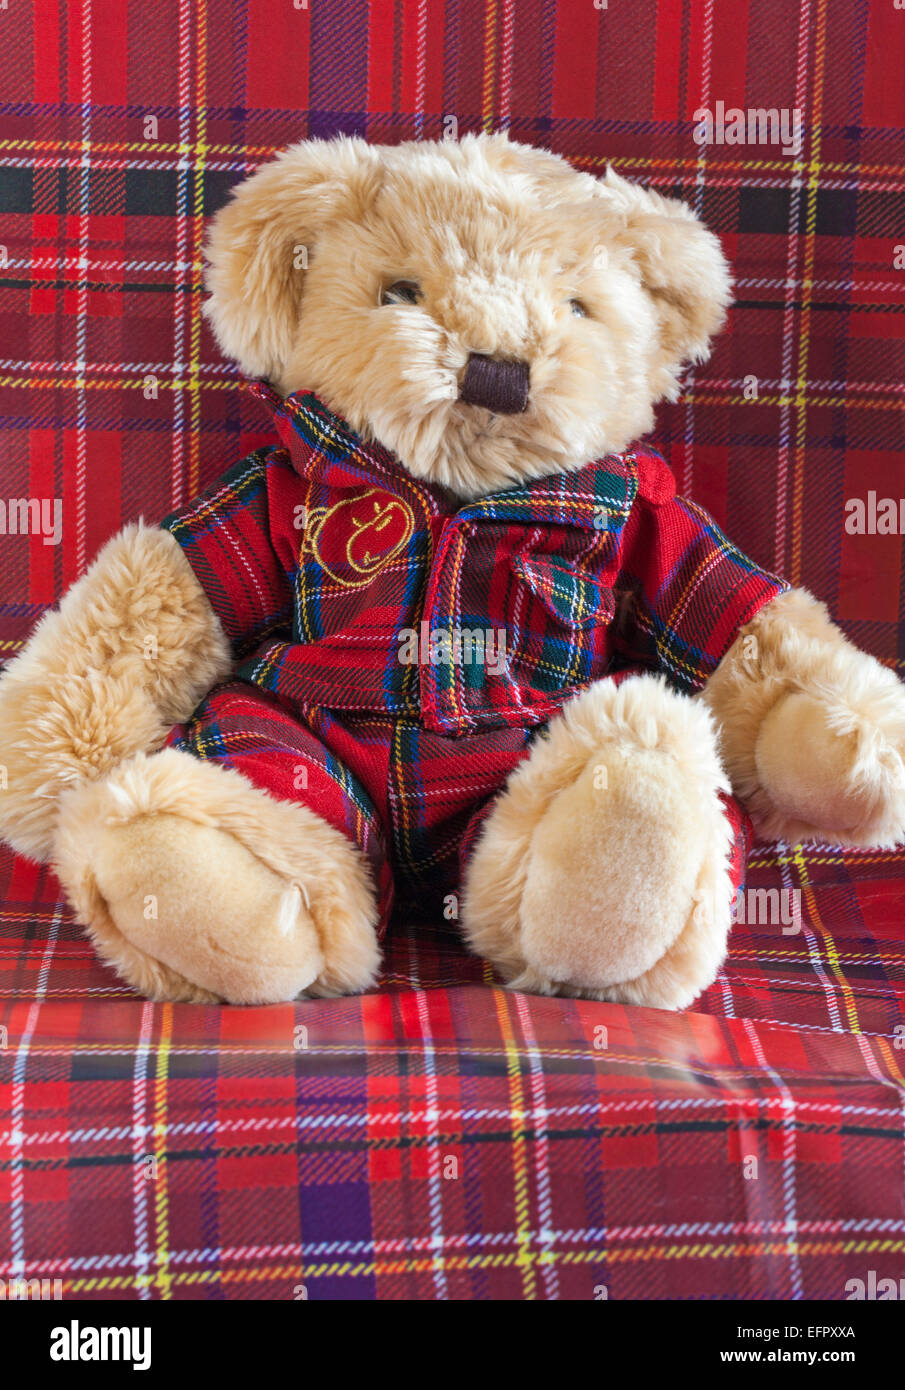 Schottische Lüfter Geschenk Neu Süß Kuschelig Schottland Flagge Teddybär 